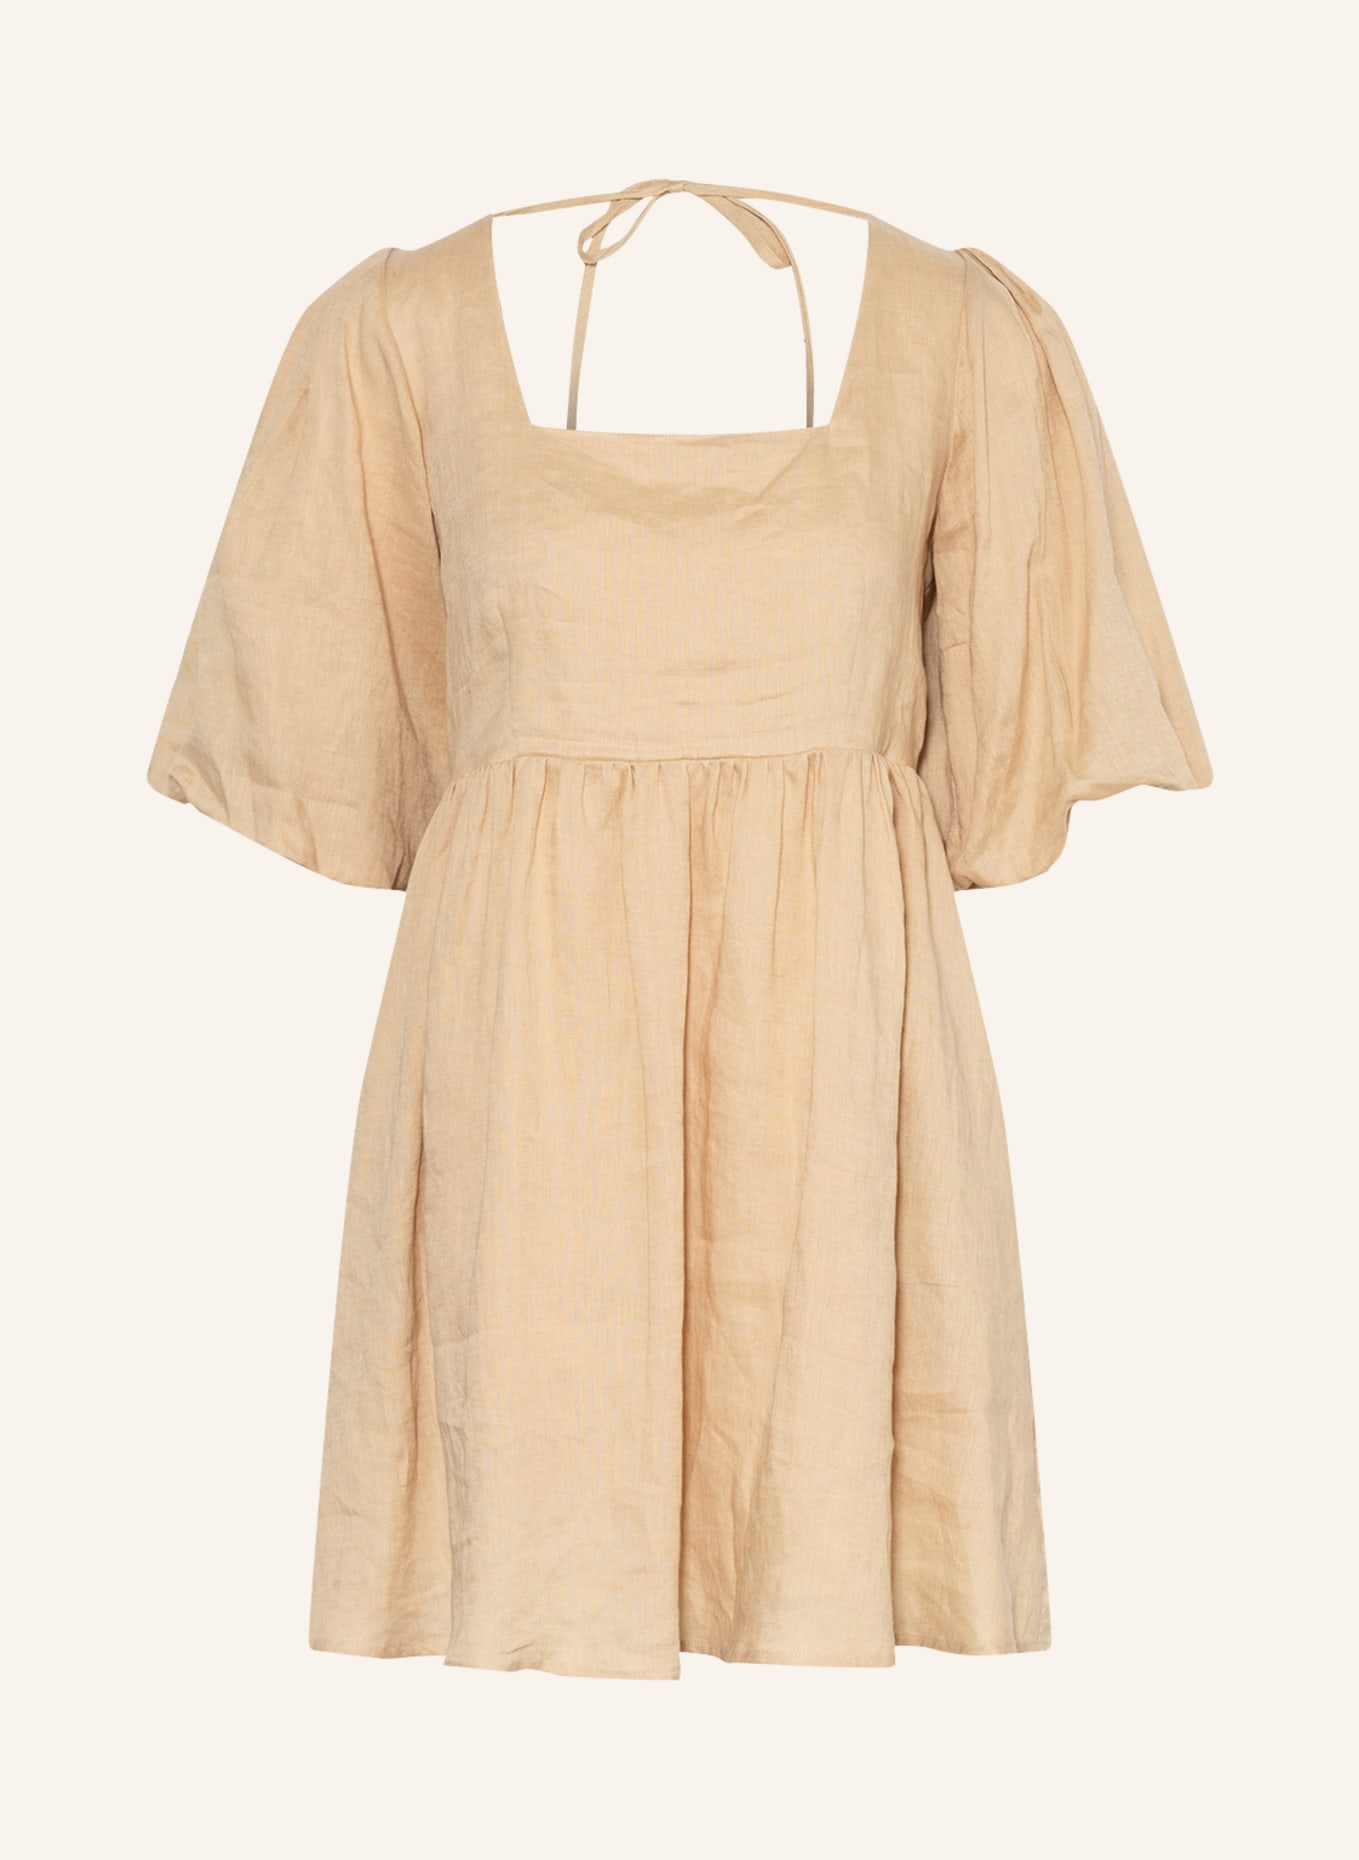 SEAFOLLY Strandkleid SHORELINE aus Leinen, Farbe: BEIGE (Bild 1)